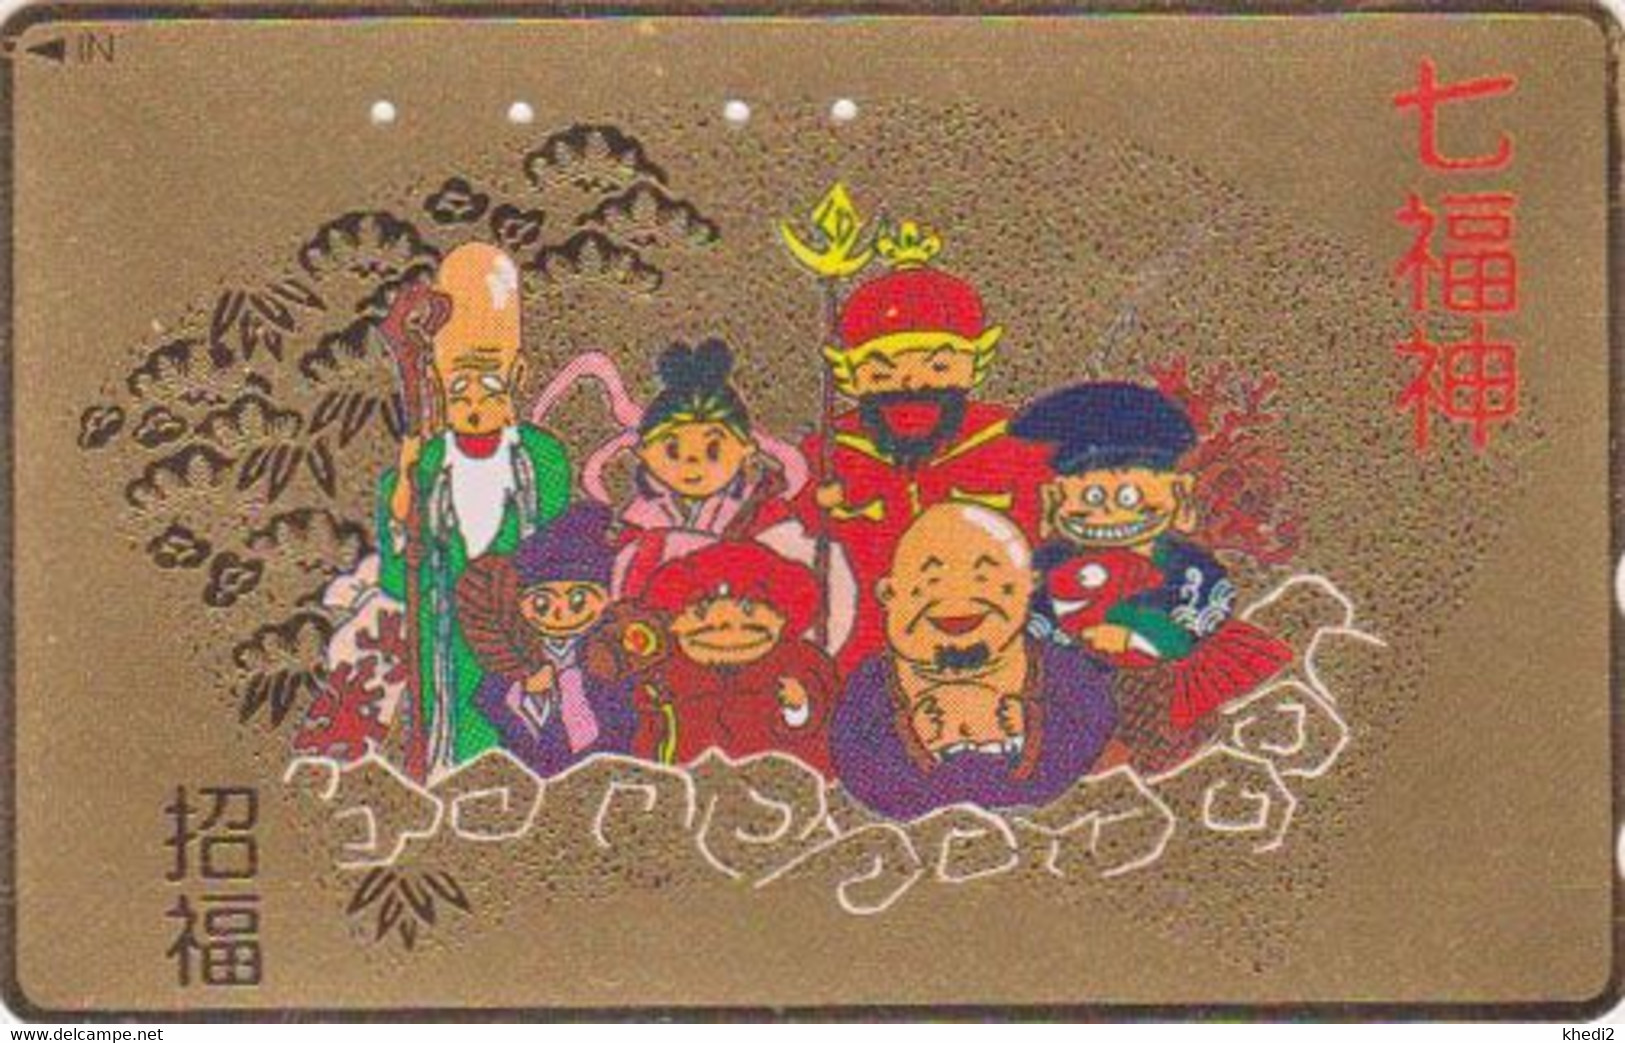 TC DOREE JAPON / 110-011 - Culture RELIGION - 7 DIEUX DU BONHEUR - LUCK GODS JAPAN GOLD Phonecard - 325 - Cultural